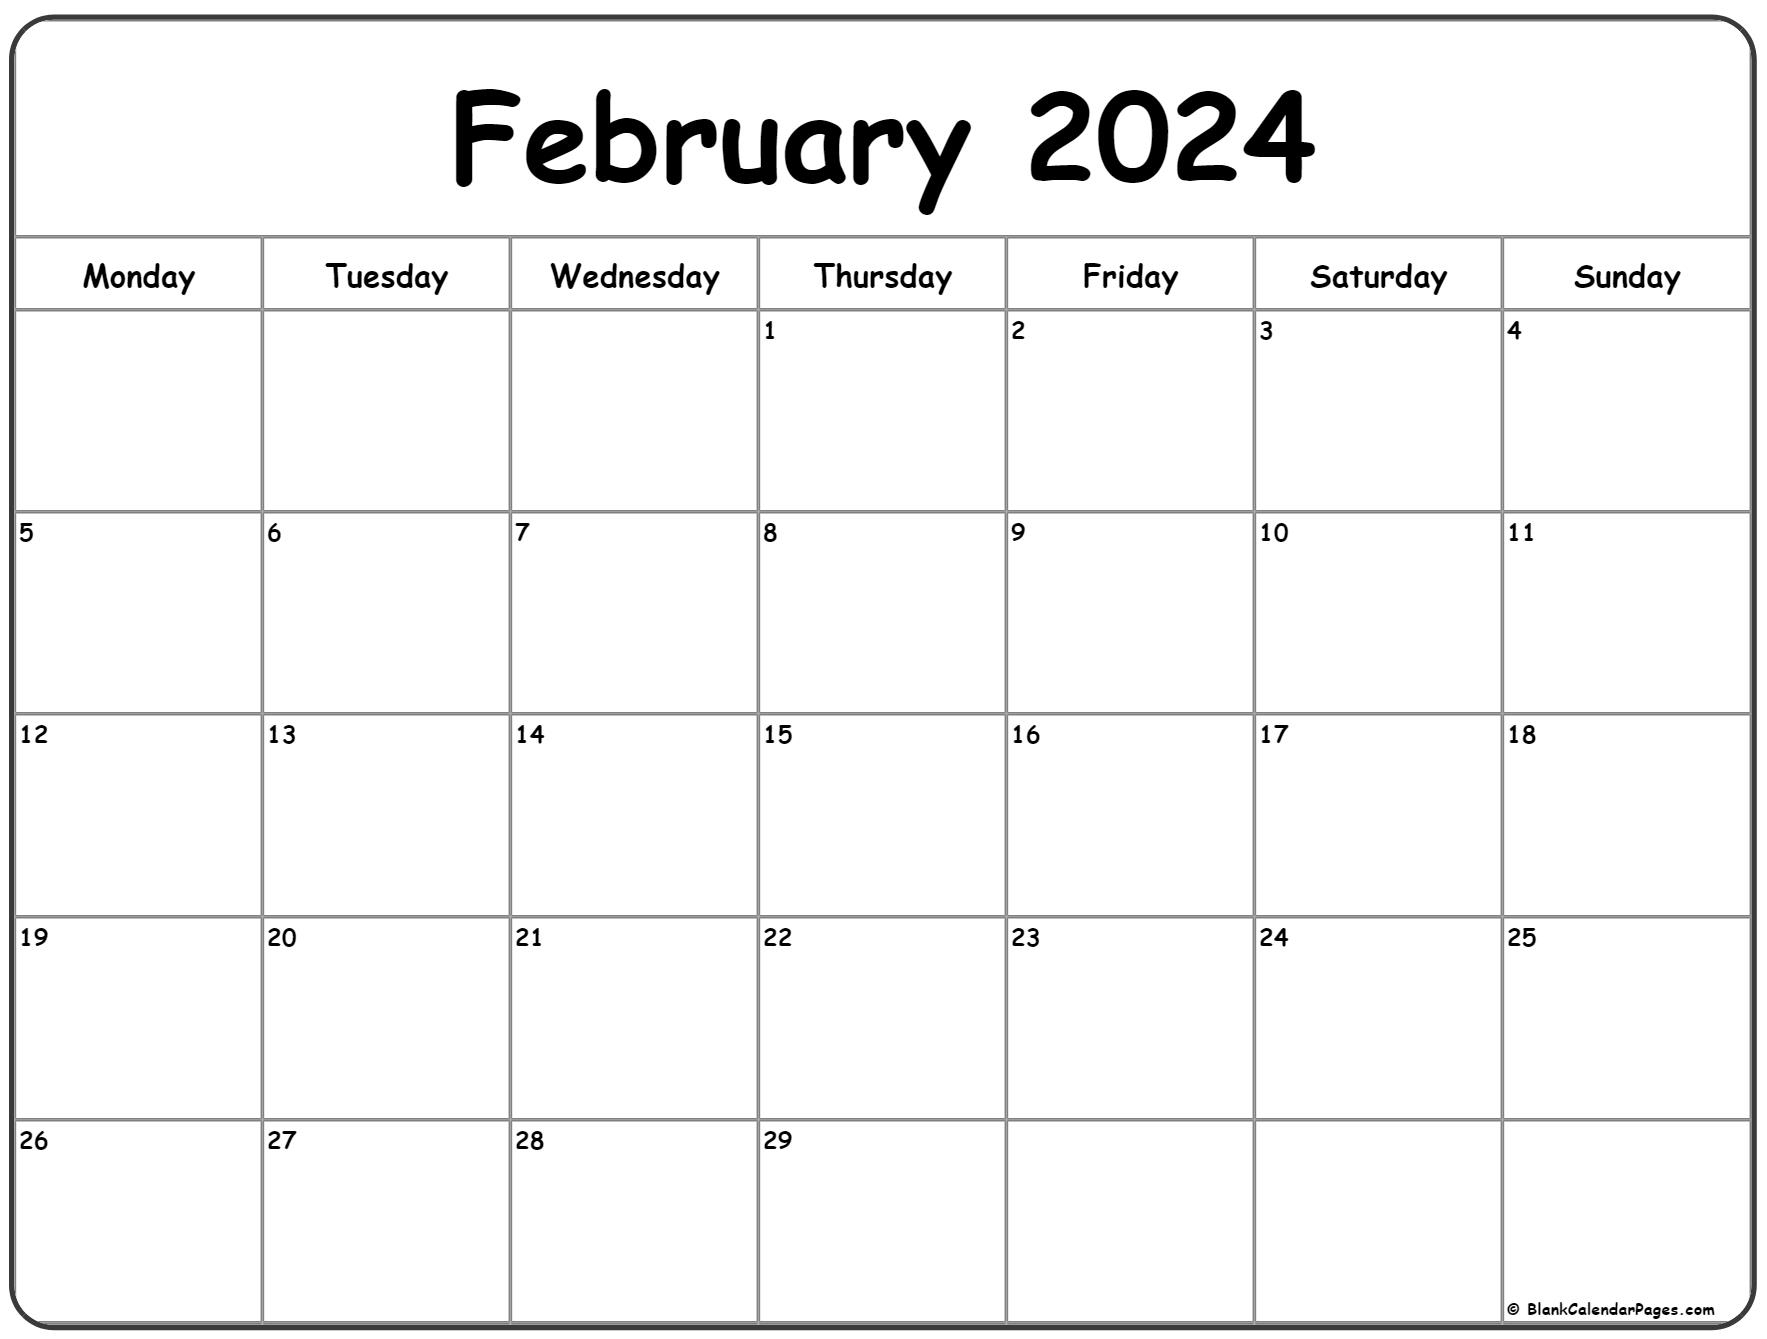 February 2024 Monday Calendar | Monday To Sunday for Febuary 2024 Printable Calendar